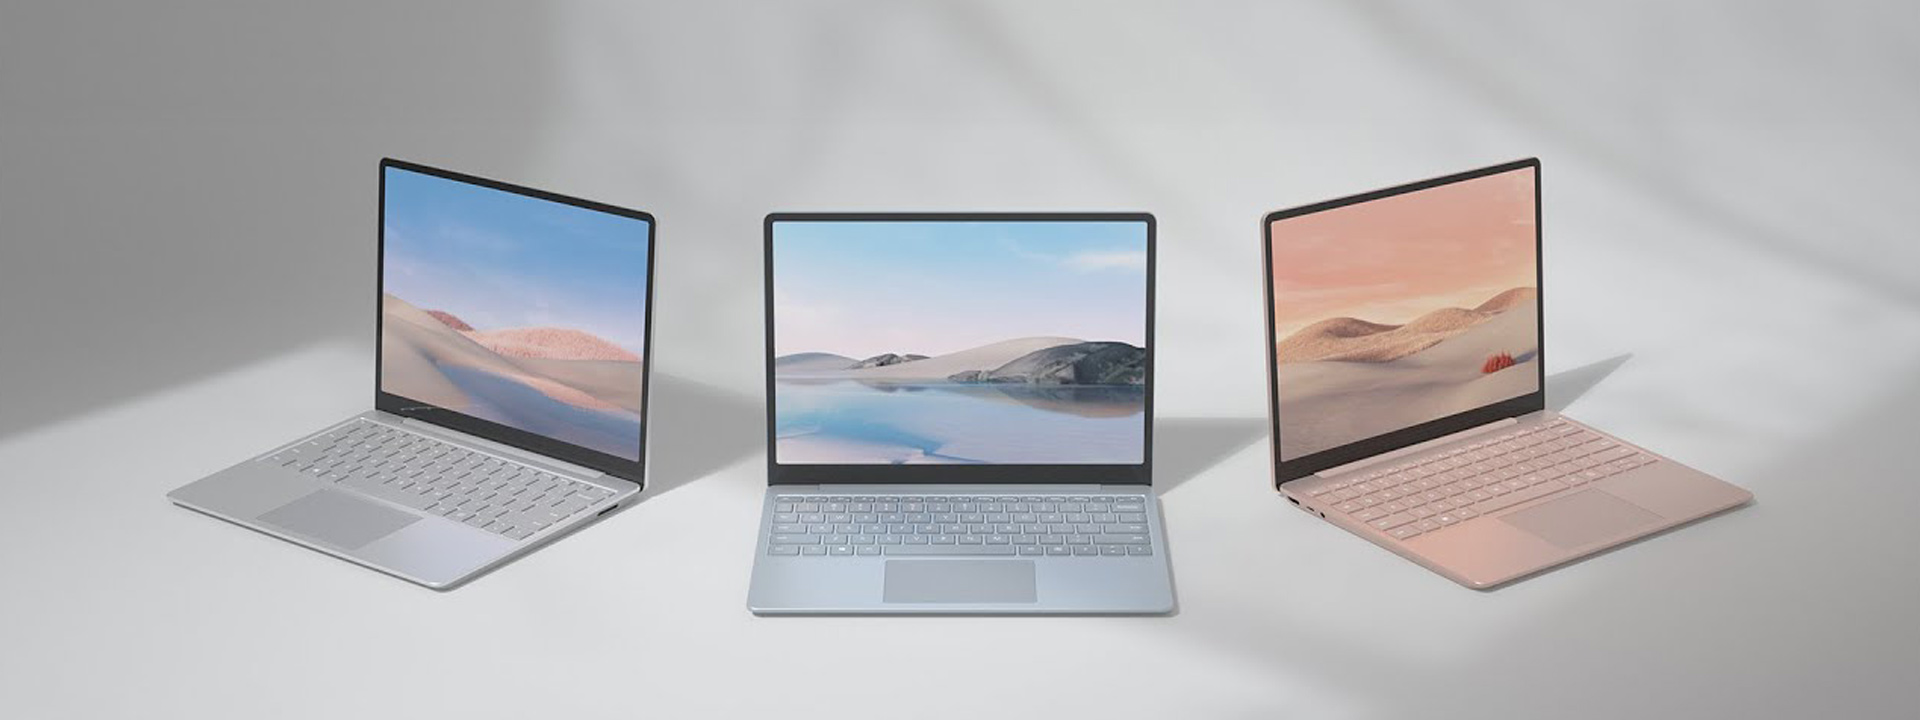 Выберите свой идеальный ноутбук одной из привлекательных расцветок: platinum, sandstone или ice blue